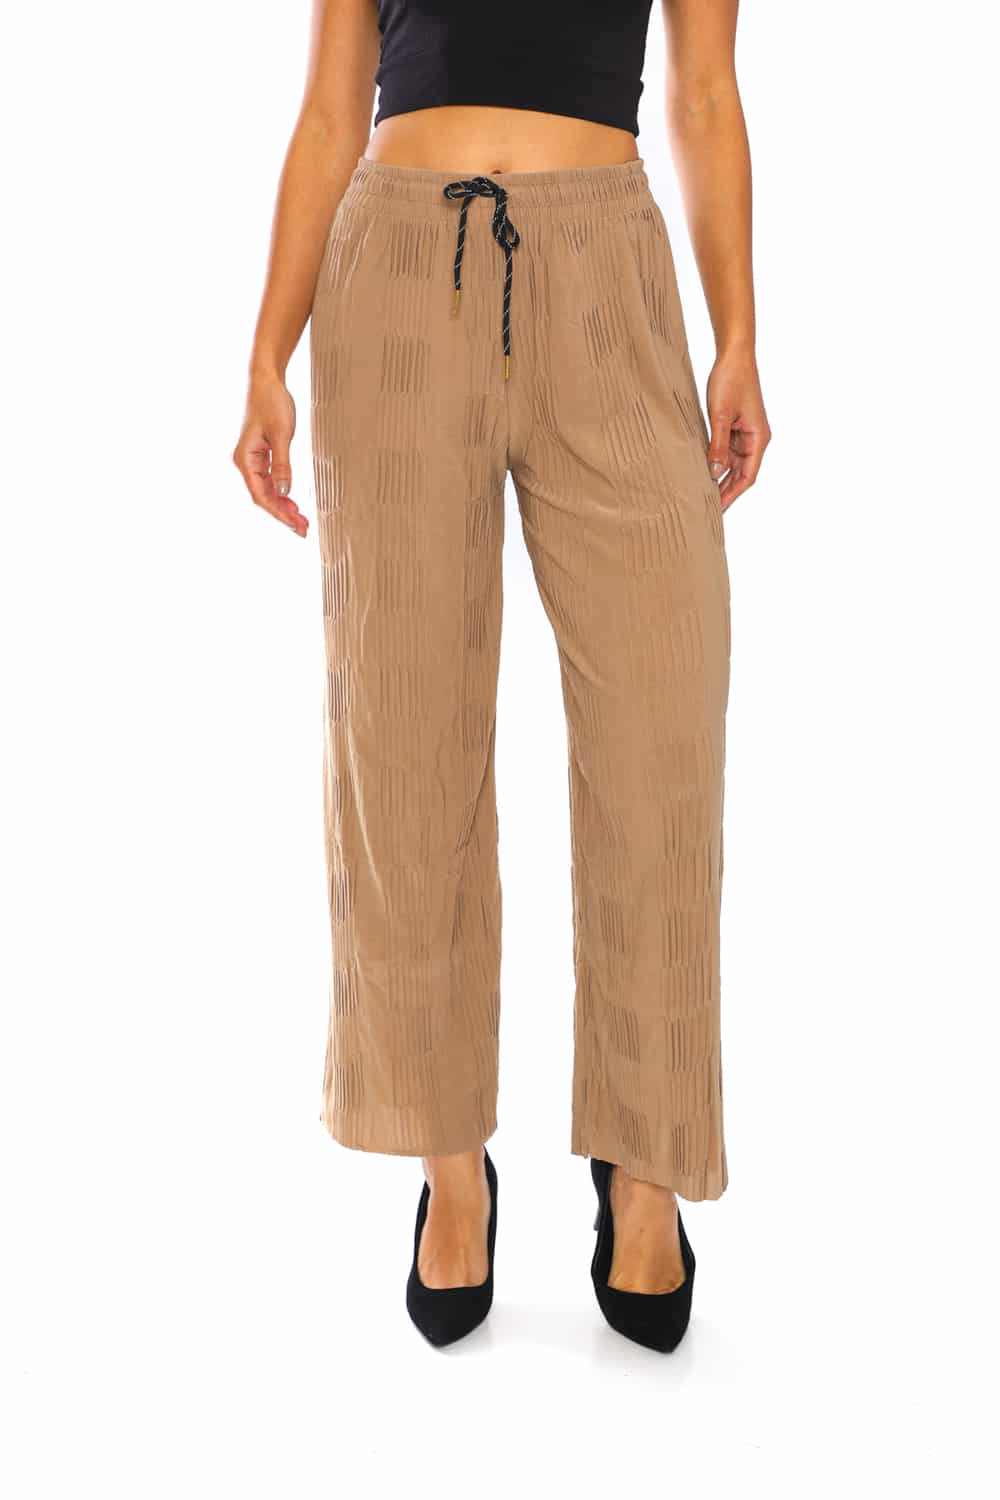 Women's Pleats Flowy Wide Pants - 17